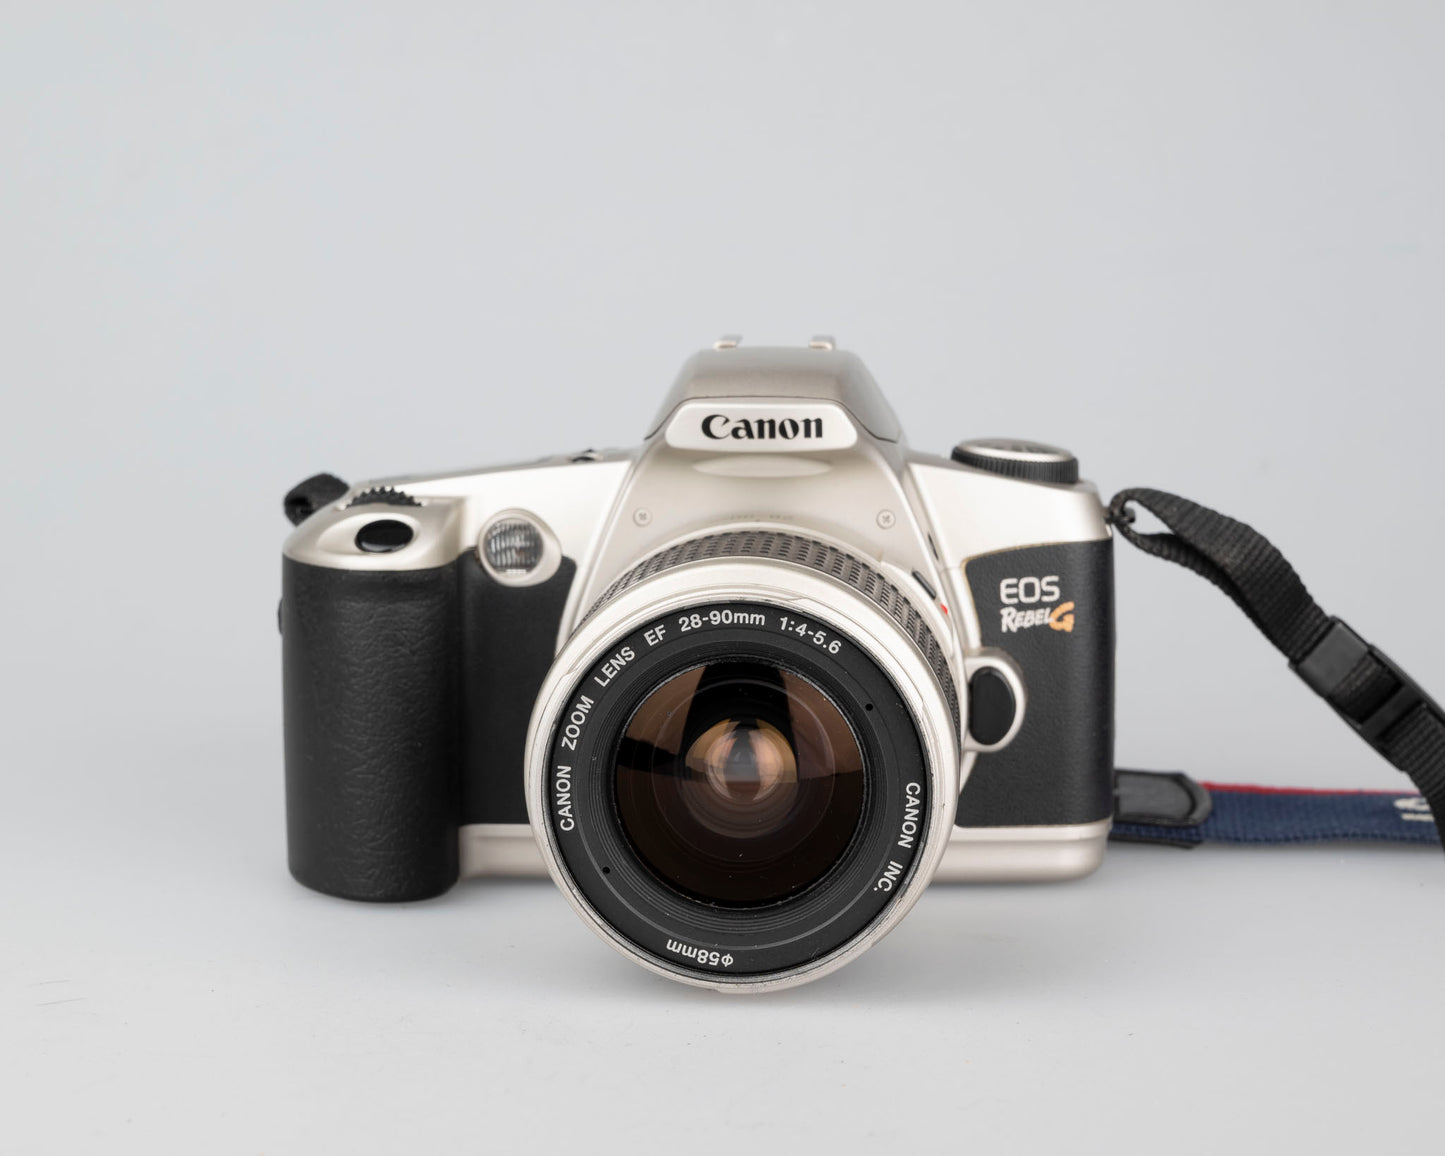 Canon EOS Rebel G 35mm film SLR w/ EF 28-90mm lens (serial 4108062)